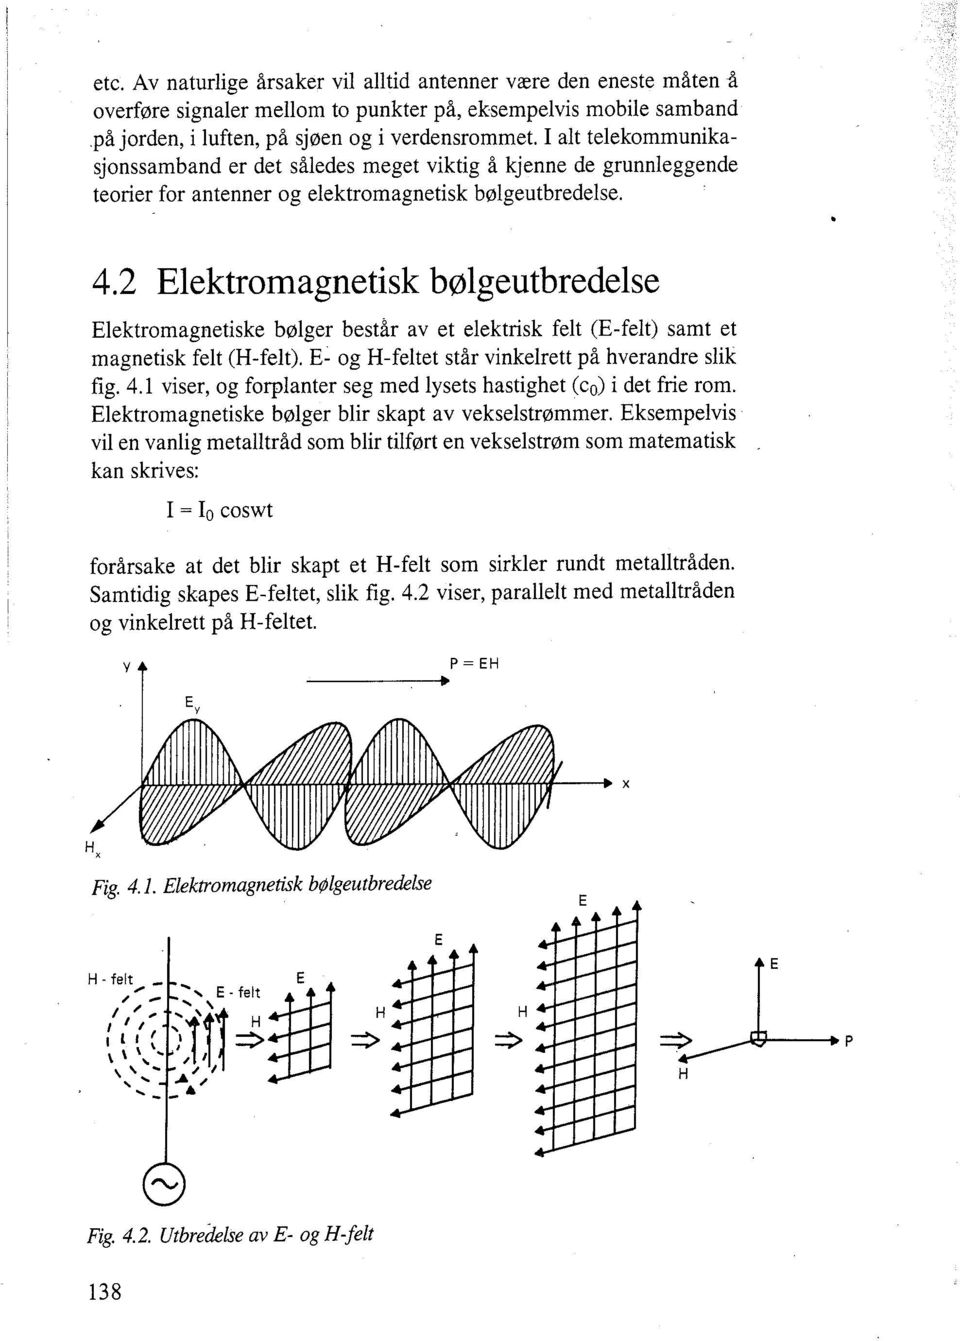 Elektromagnetisk b~lgeutbredelse Elektromagnetiske bolger består av et elektrisk felt (E-felt) samt et magnetisk felt (H-felt). E- og H-feltet står vinkelrett på hverandre slik fig. 4.